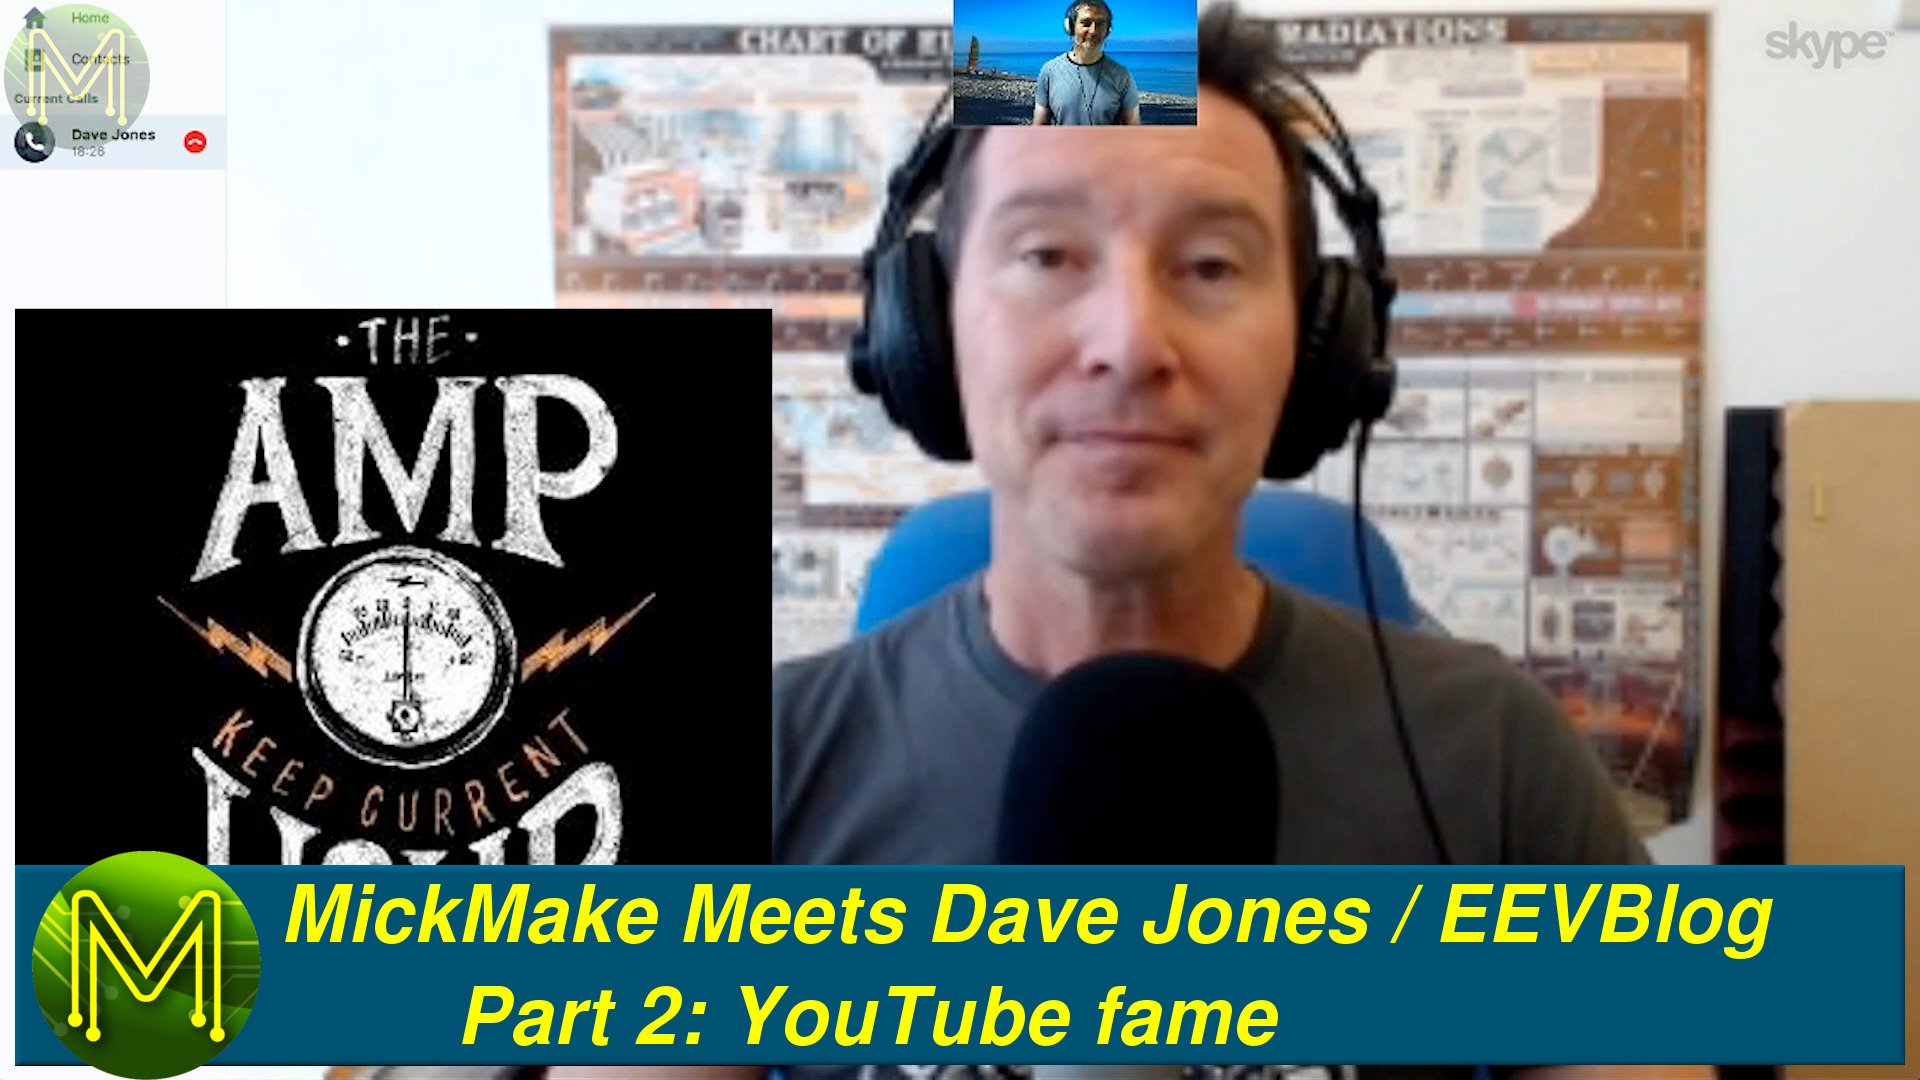 MickMake Meets: Dave Jones / EEVBlog - Part 2: YouTube fame